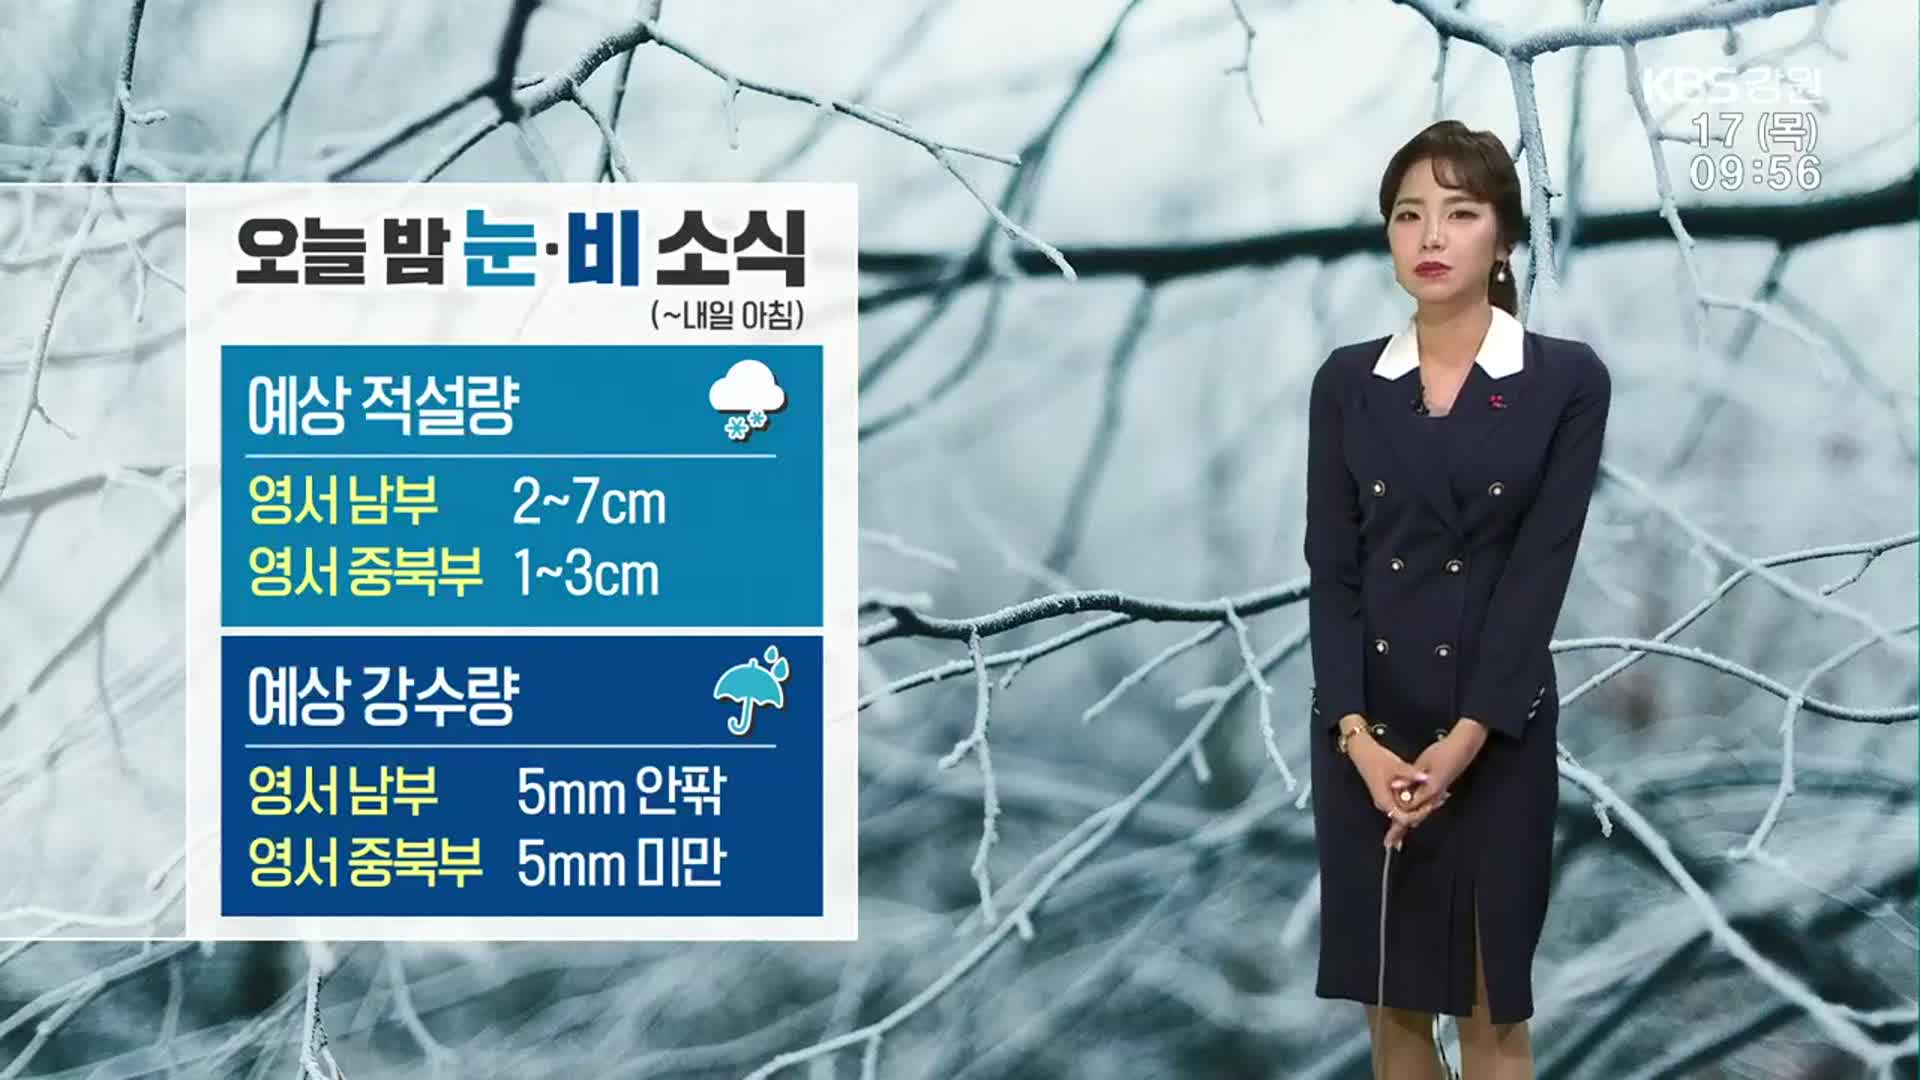 [날씨] 강원 한파주의보…오늘 밤부터 영서지역 눈·비